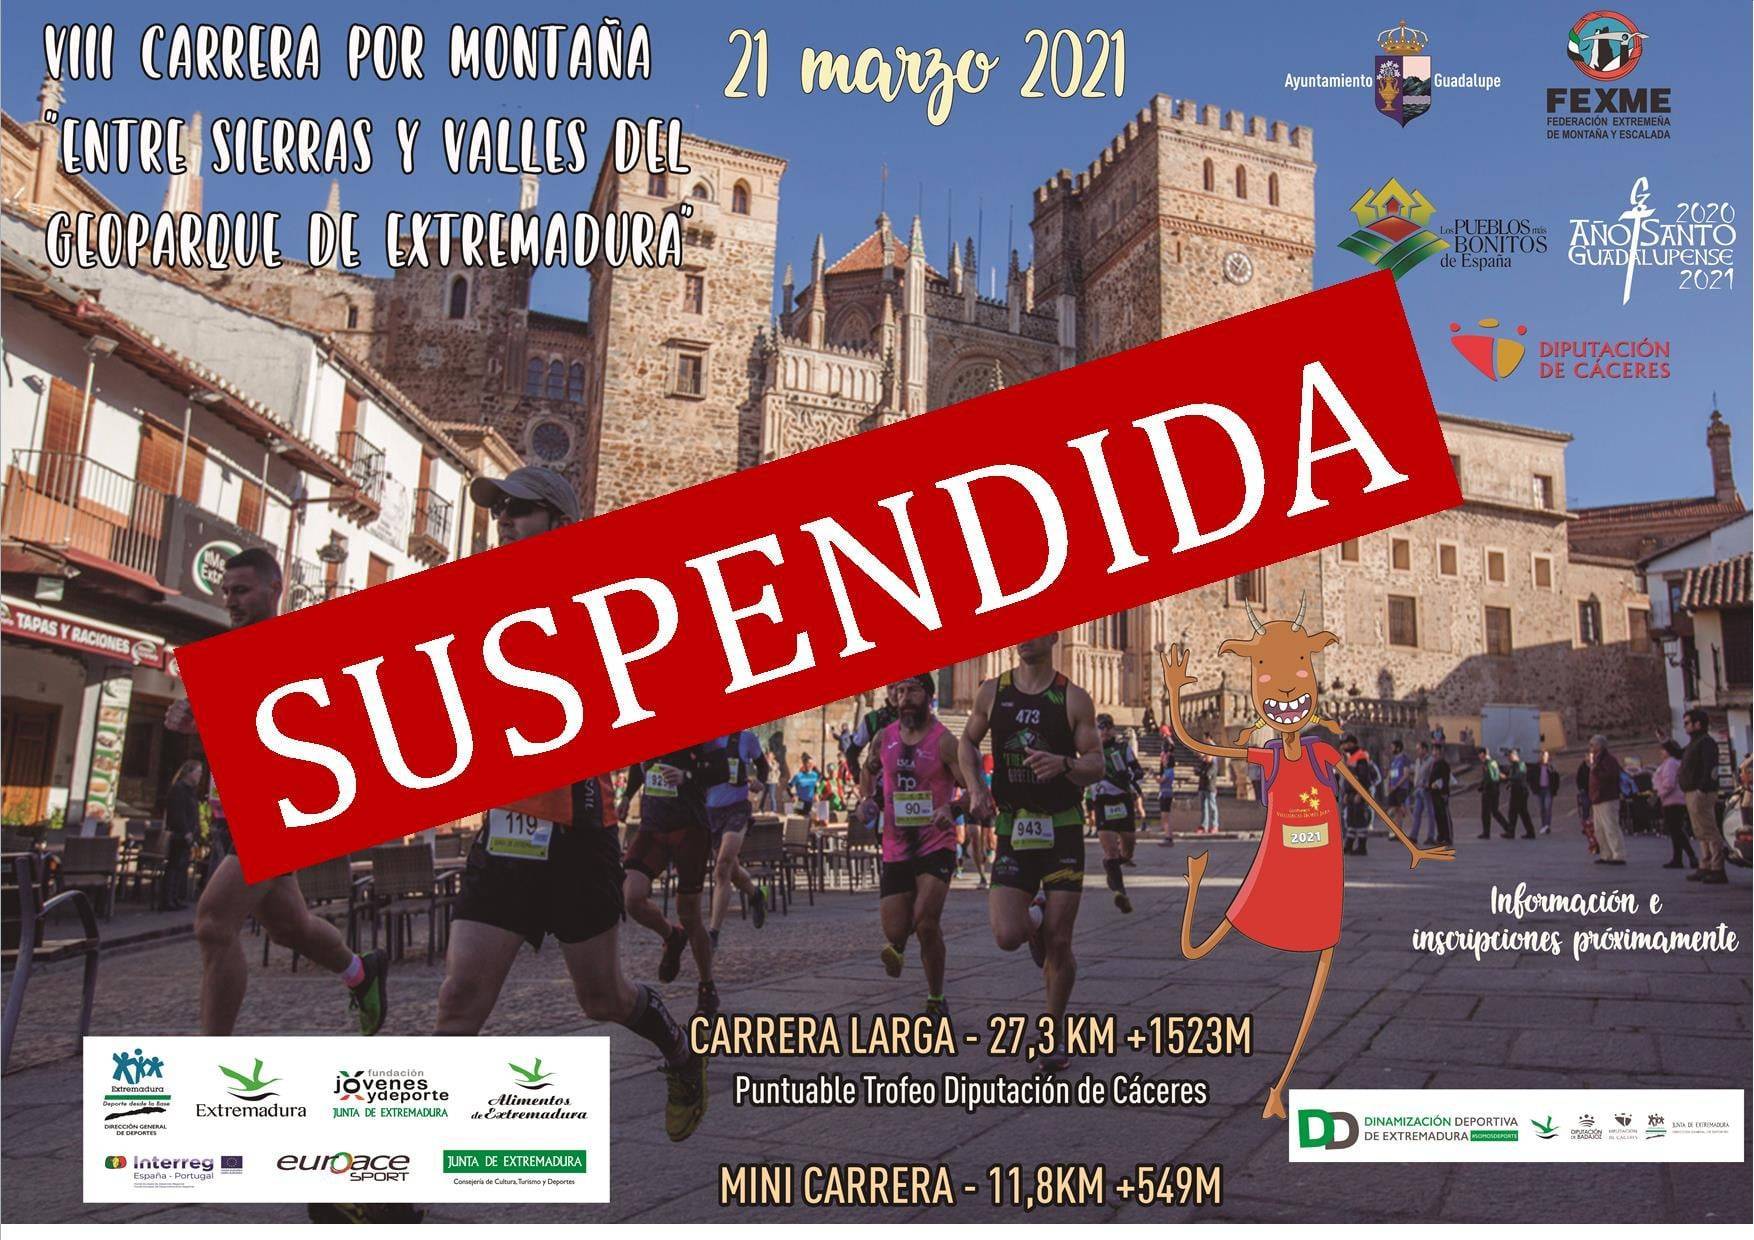 Suspendida la VIII carrera por montaña Entre sierras y valles del Geoparque de Extremadura - Guadalupe (Cáceres)